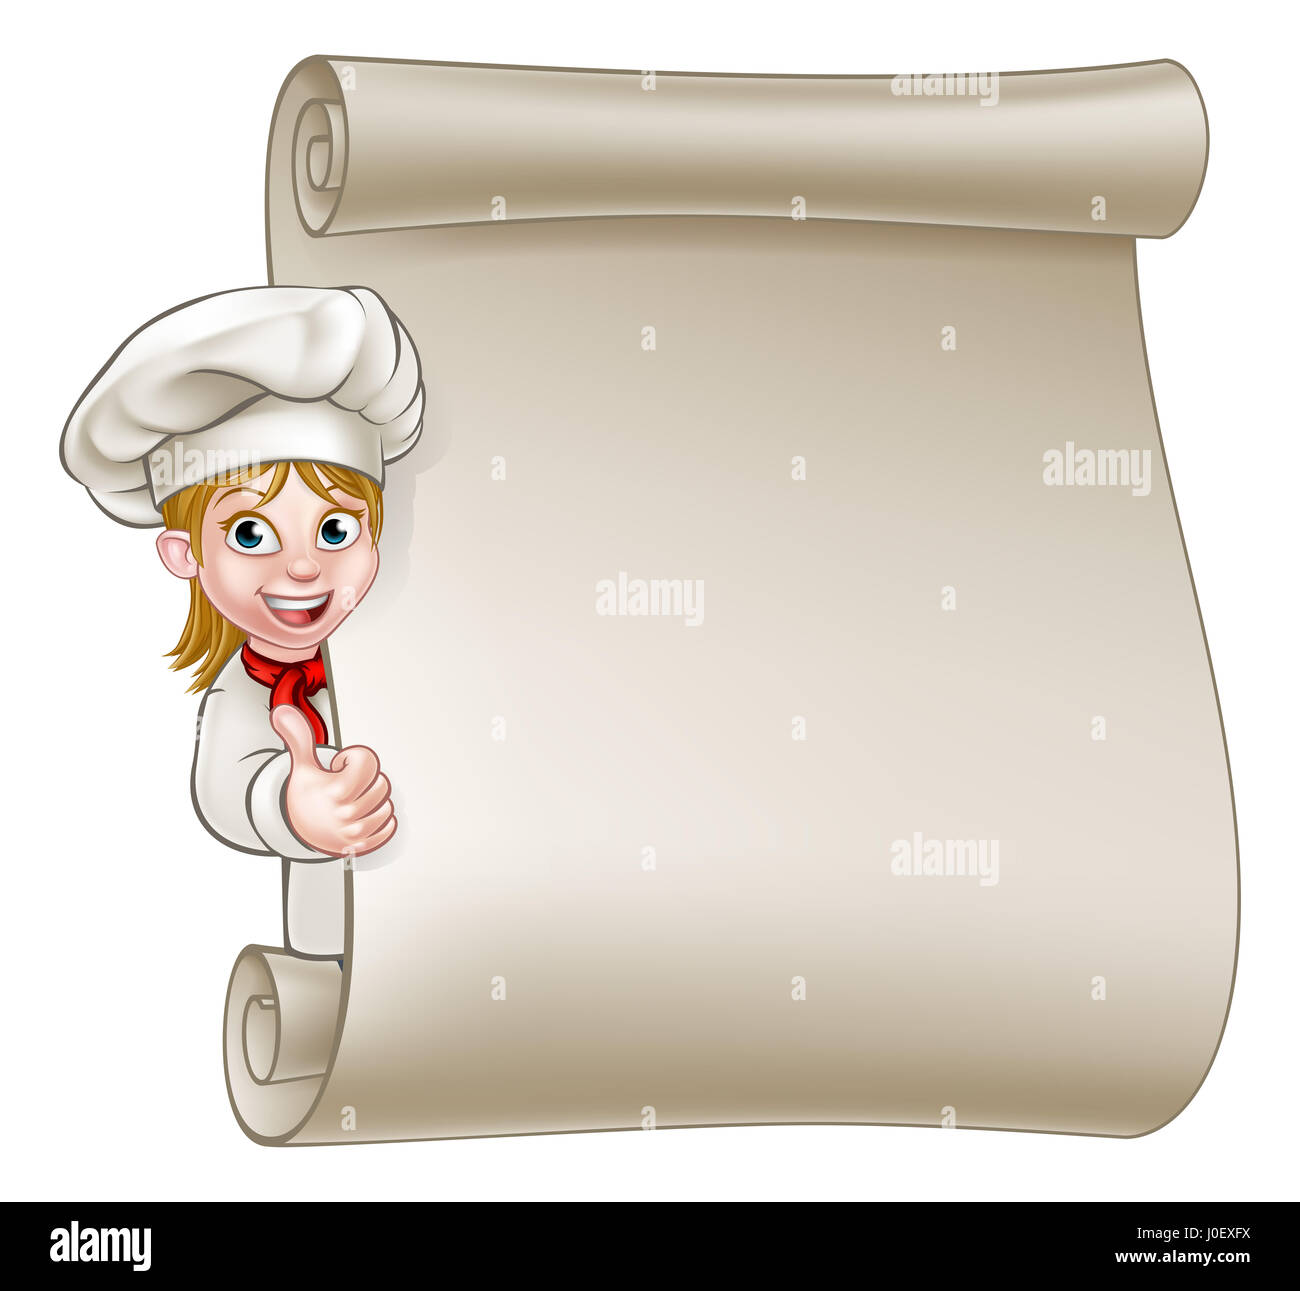 Comicfigur Frau Koch oder Bäcker Daumen aufgeben und spähen um Zeichen oder Scroll-Menü Stockfoto